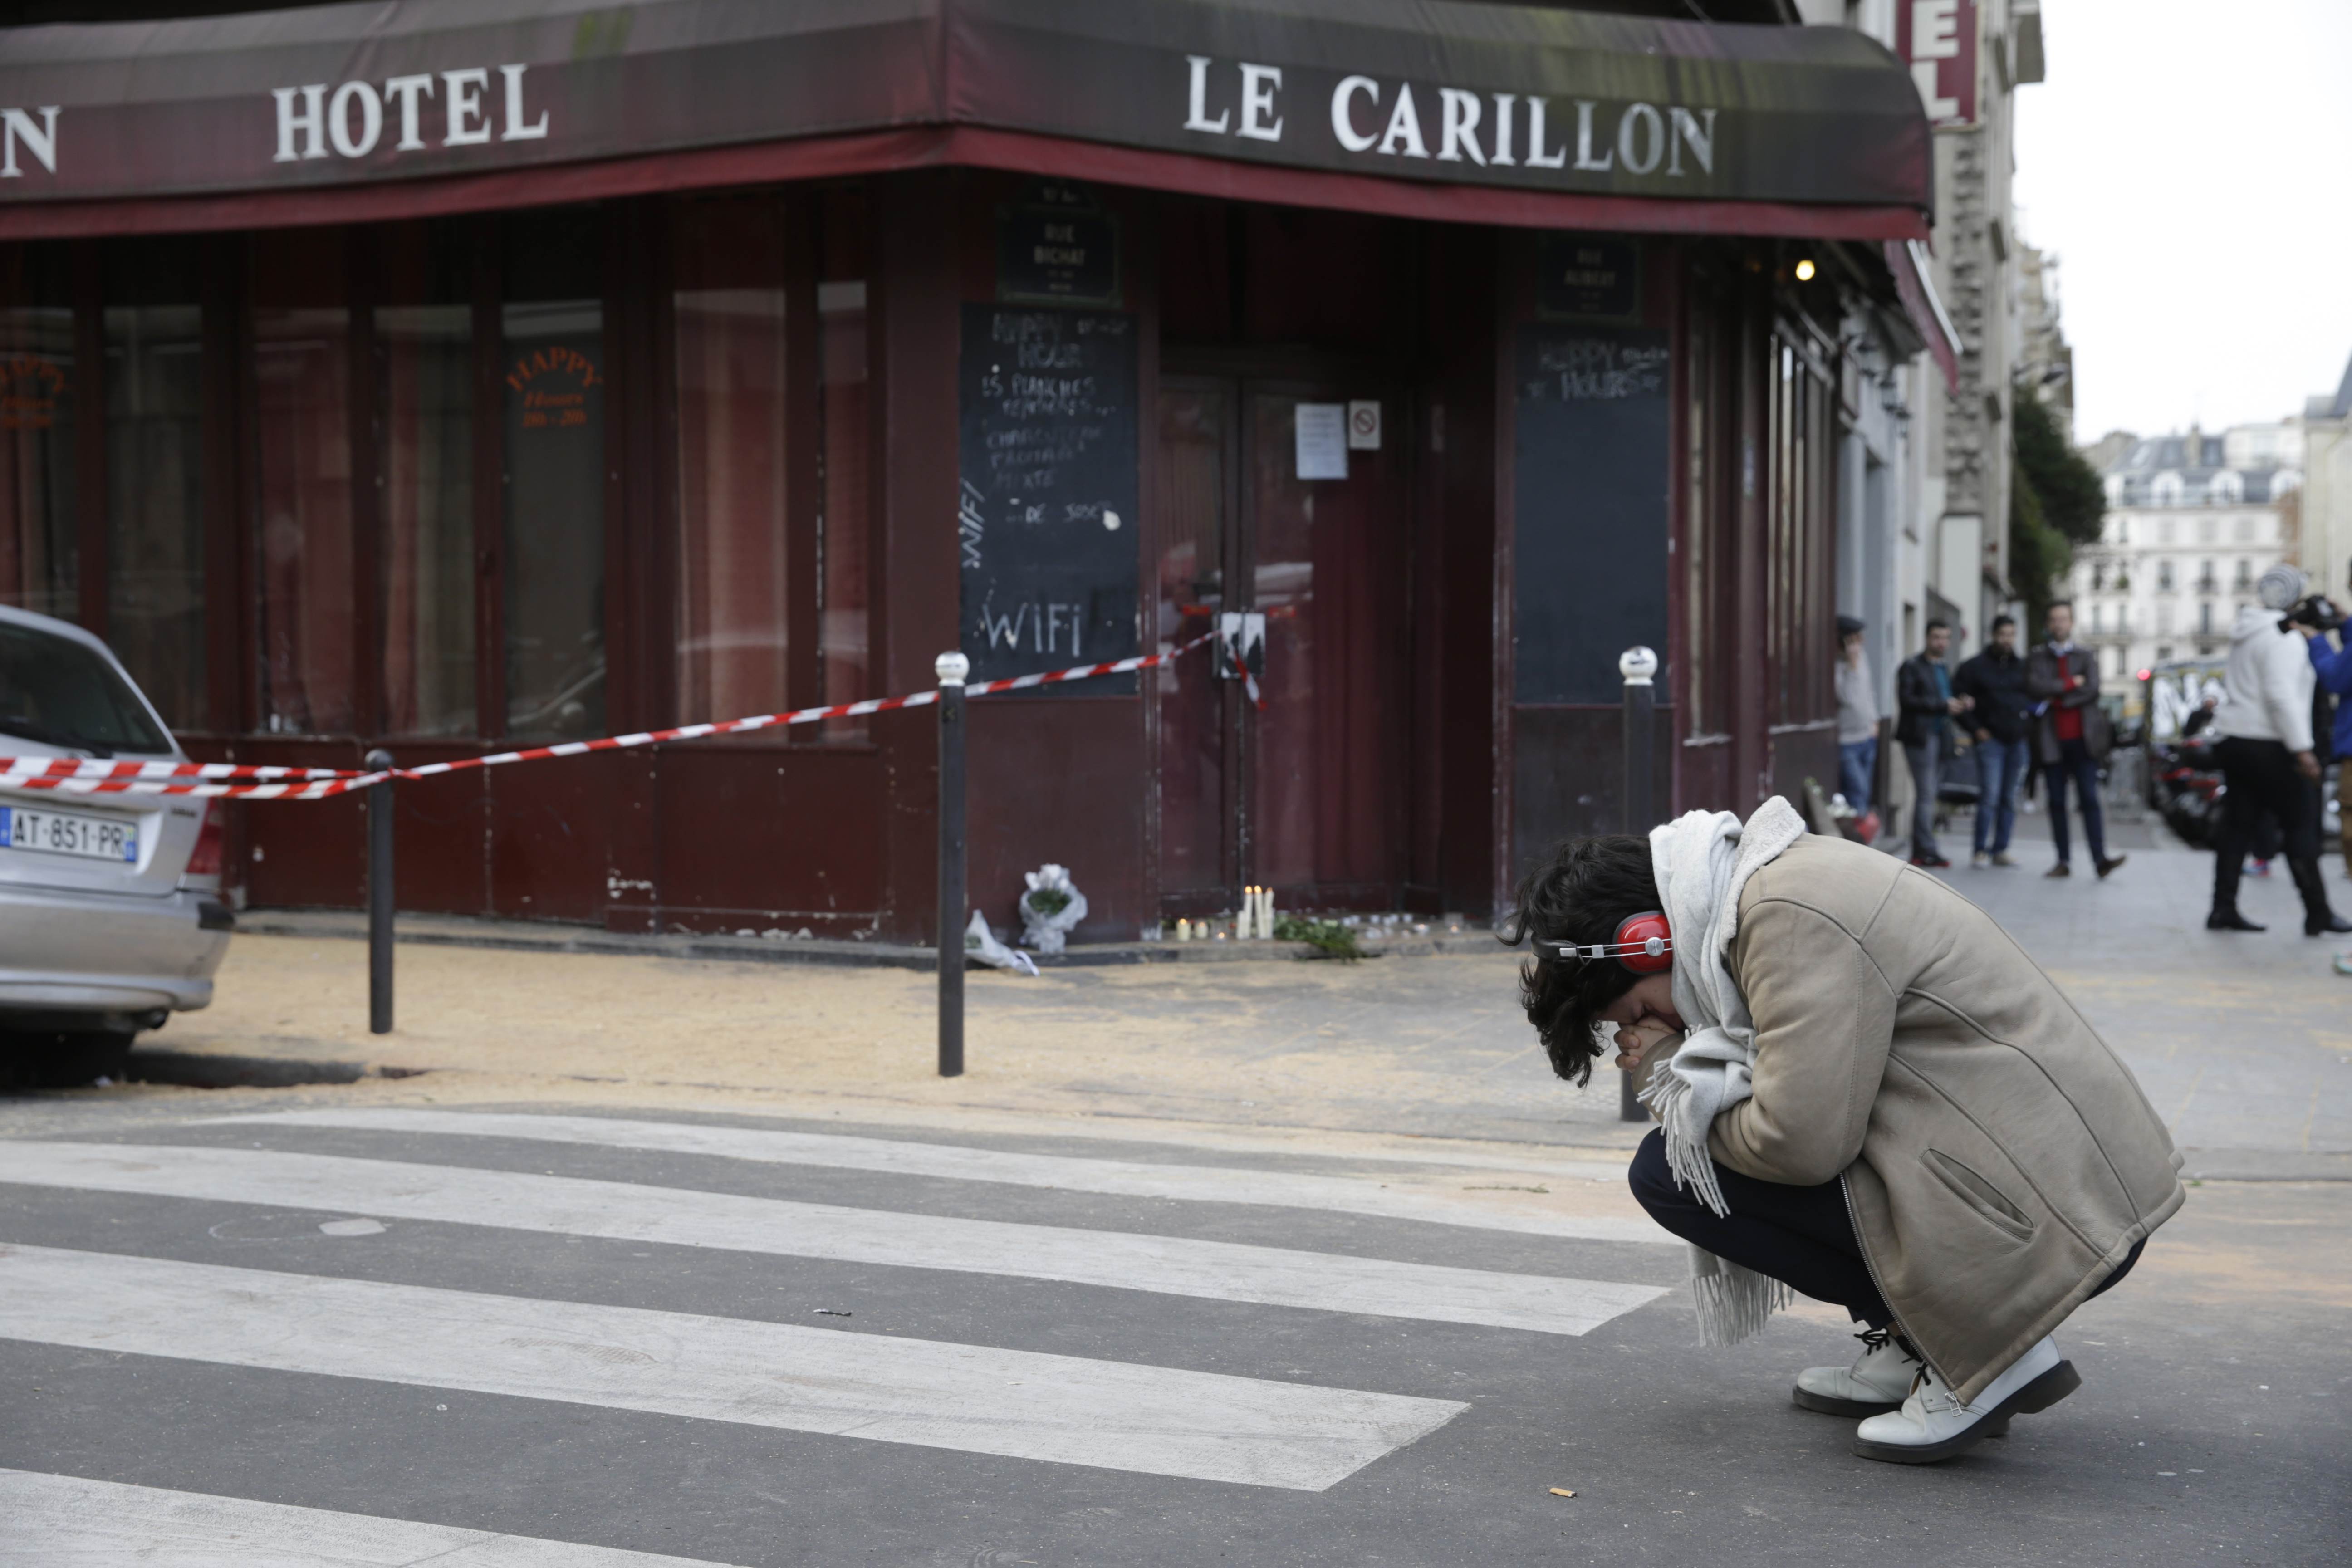 Nỗi đau trước hiện trường thảm sát ở quán Le Carillon - Ảnh: AFP
